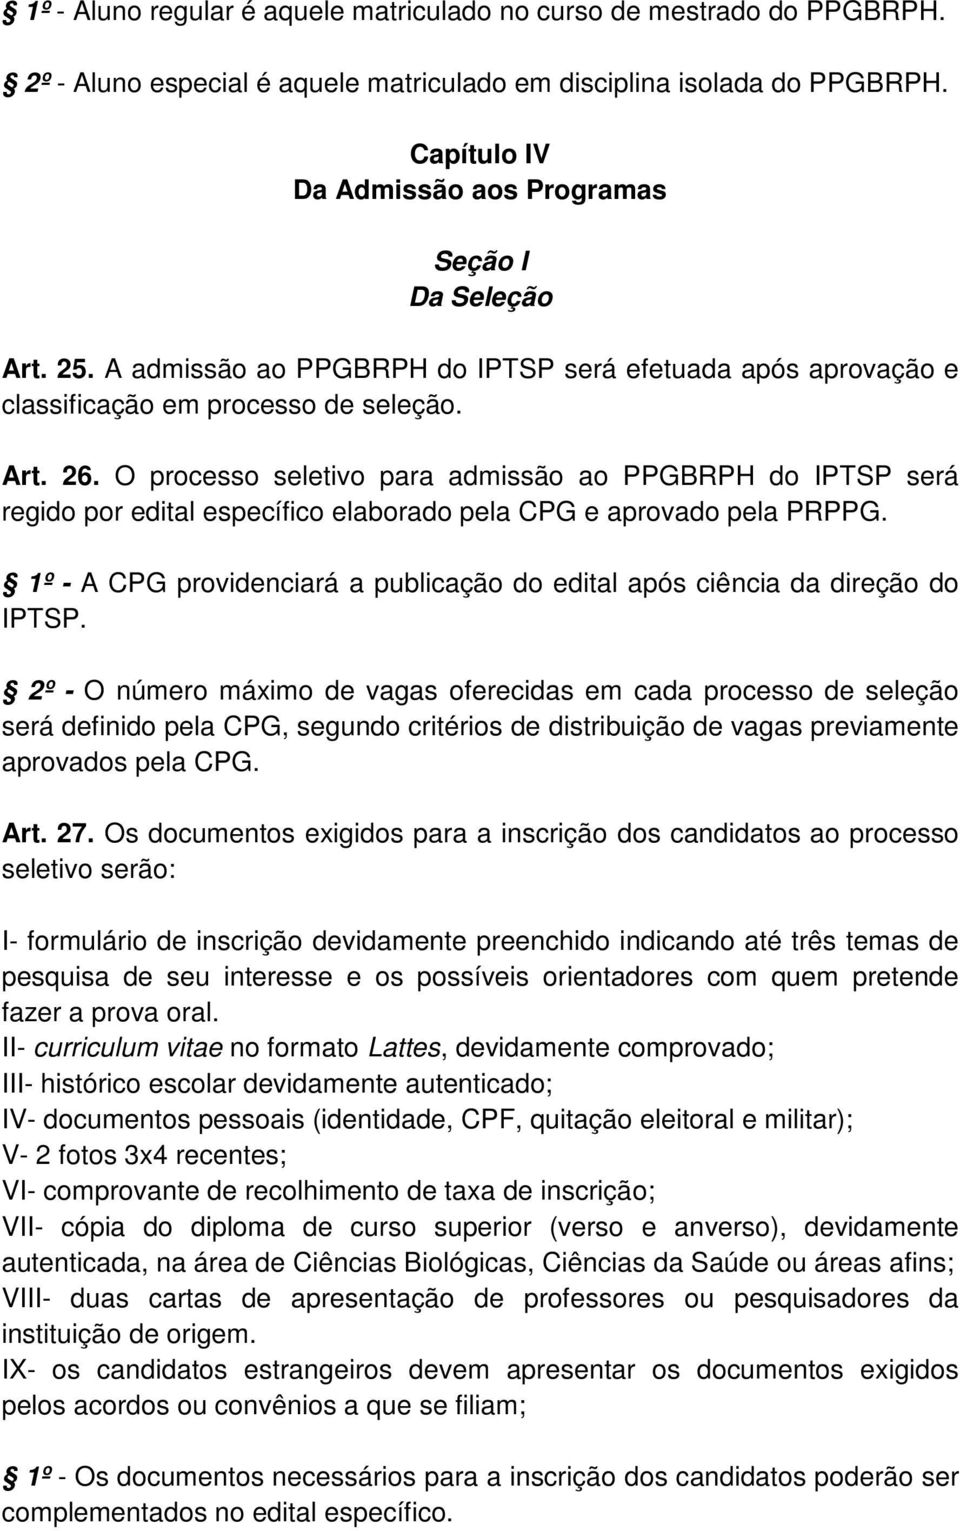 O processo seletivo para admissão ao PPGBRPH do IPTSP será regido por edital específico elaborado pela CPG e aprovado pela PRPPG.